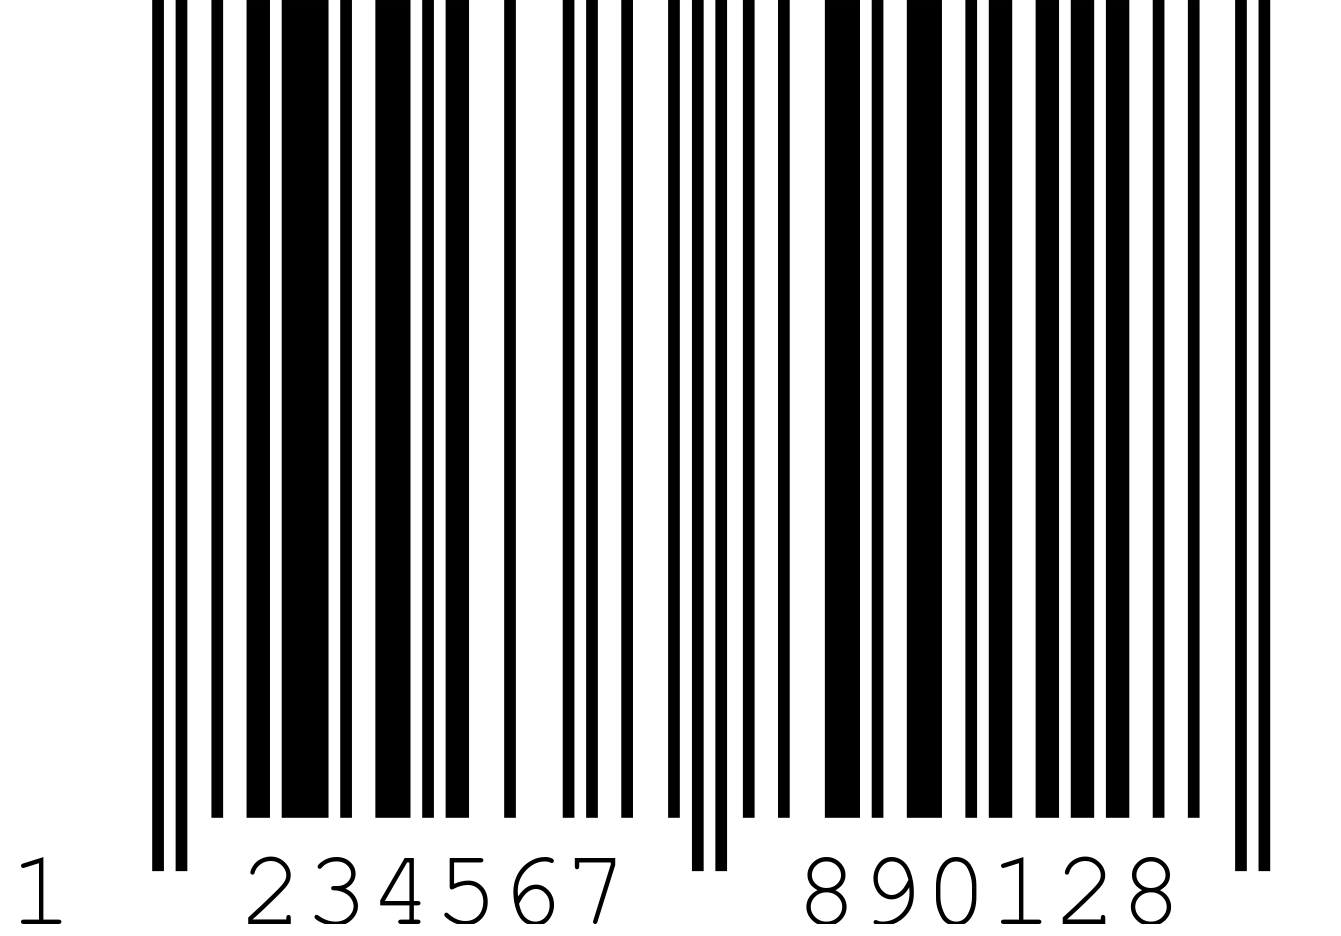 Tag harga Asal / Barcode / ean-13